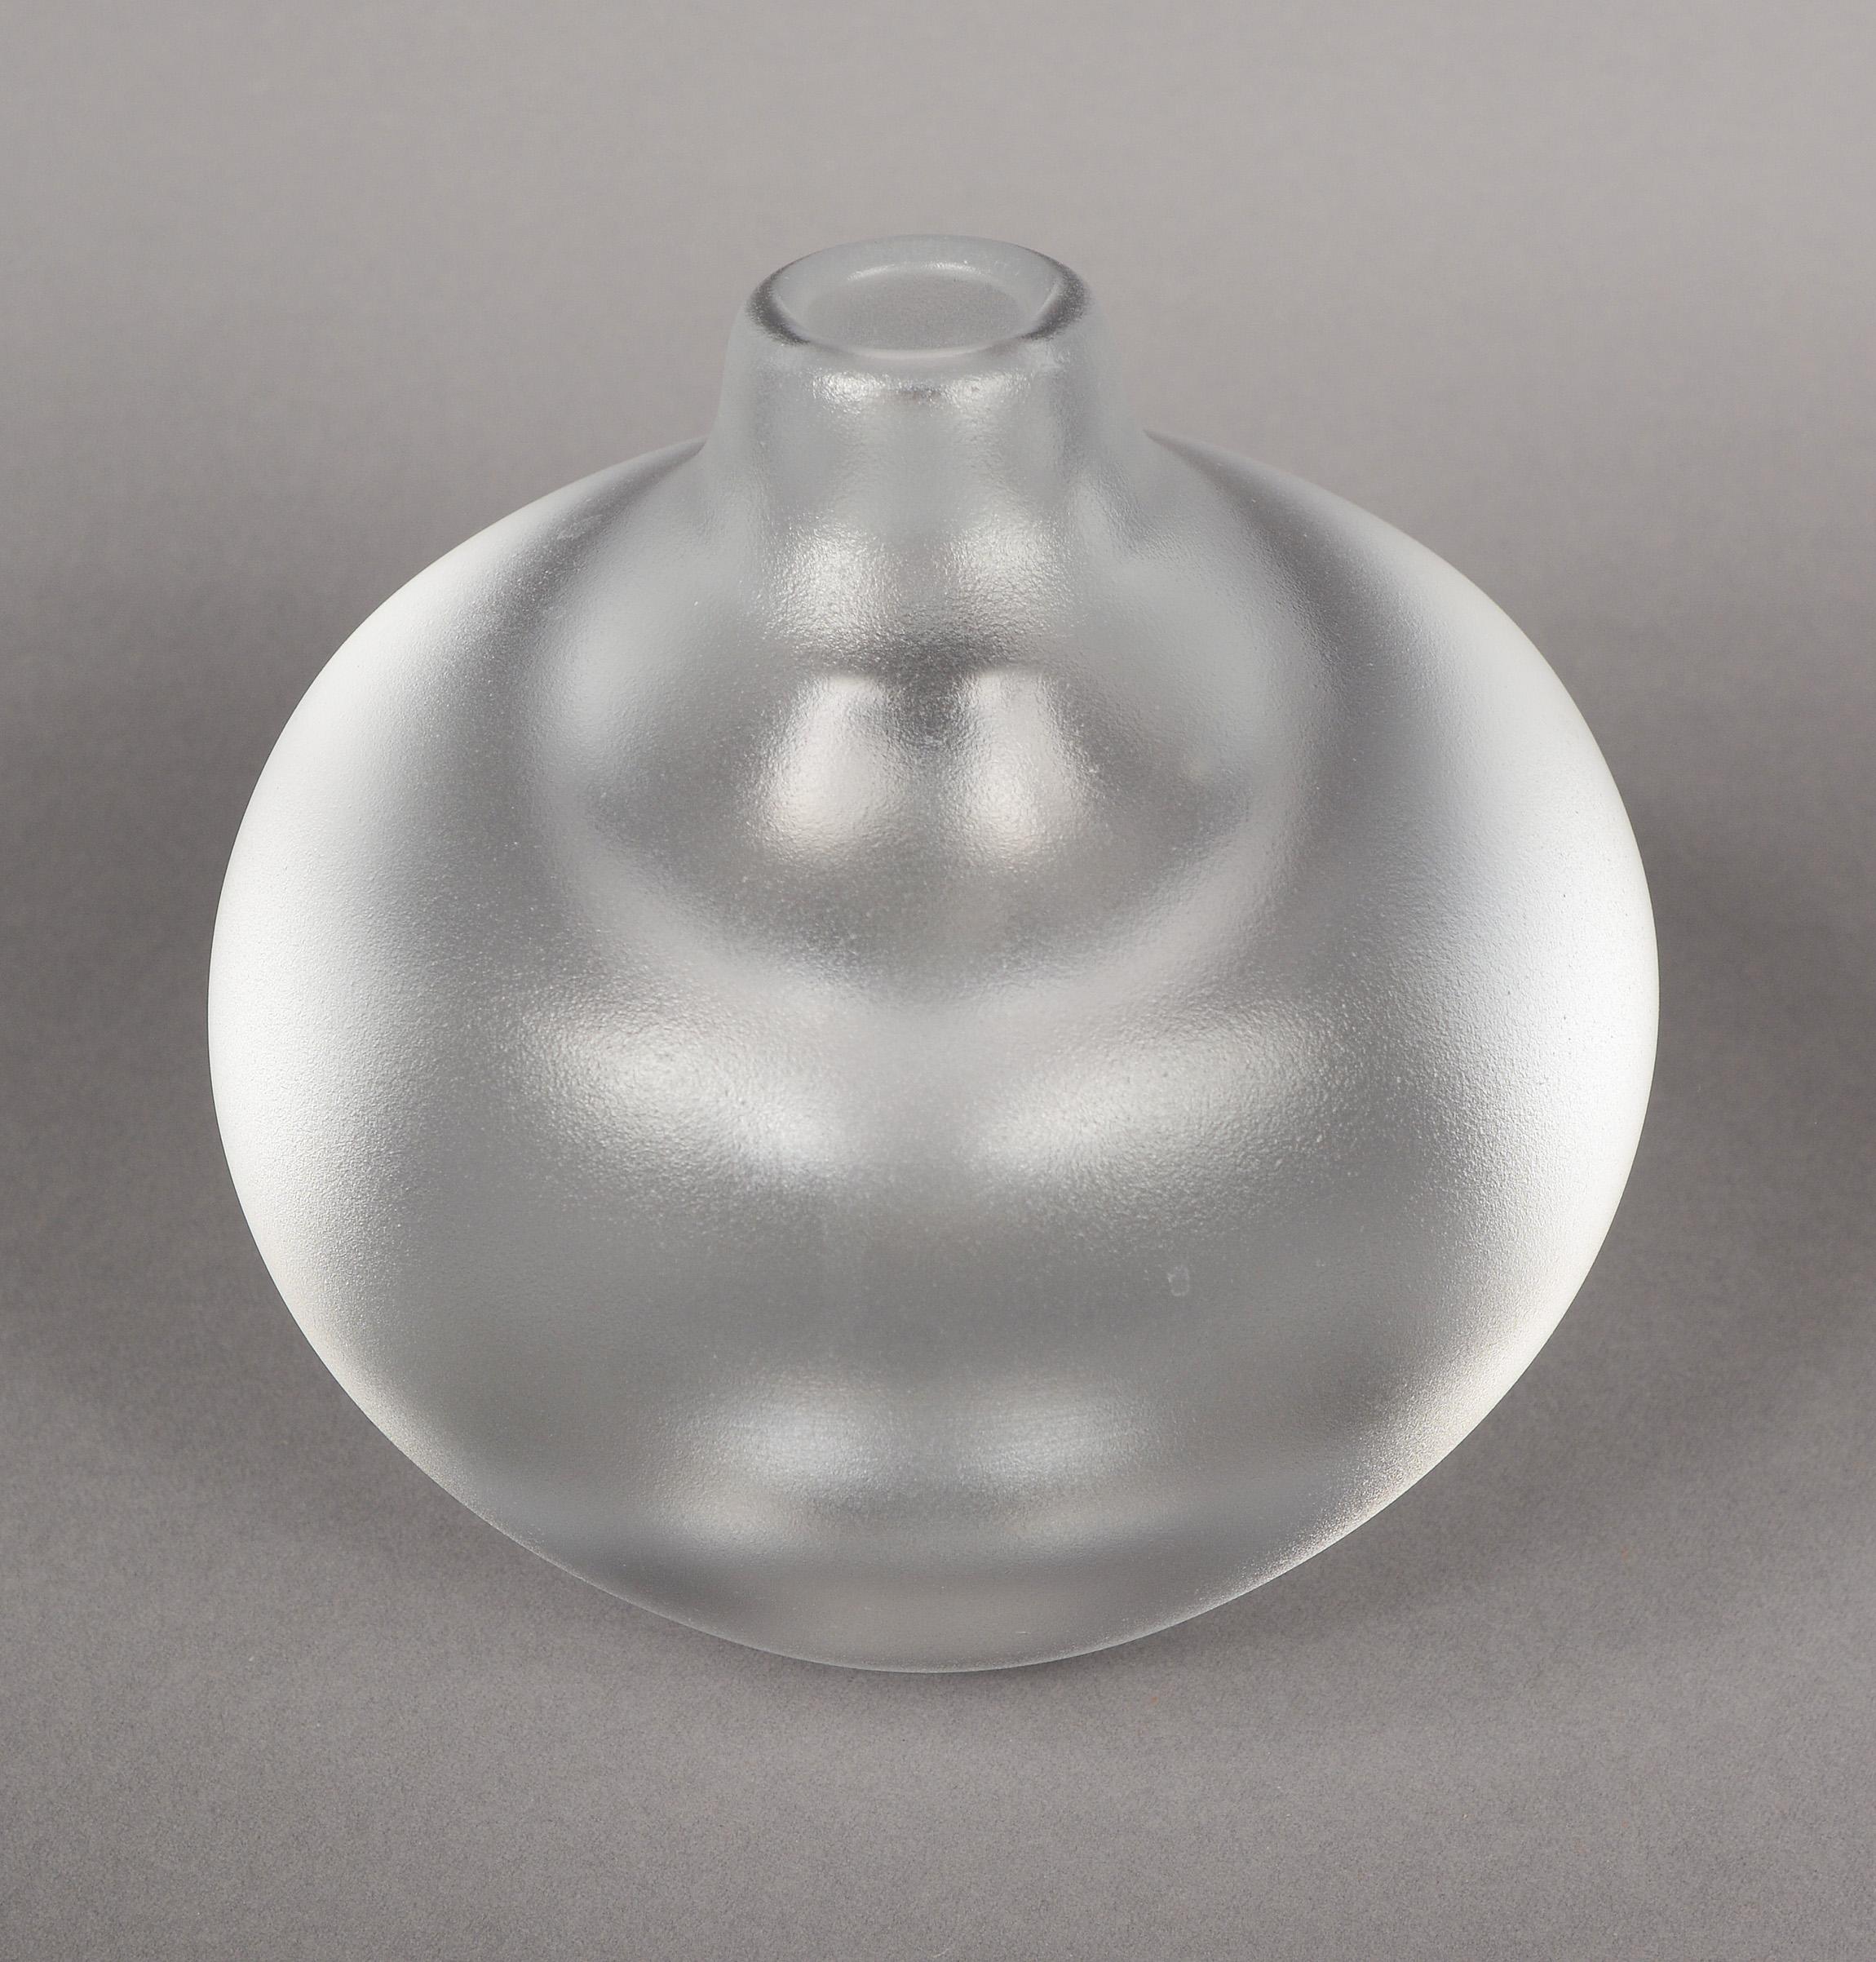 Vase aus der Kosta Royal Art Collection, entworfen von Goran Warff. Diese Vase hat sehr dicke Wände, eine große innere Blase im Boden und eine säurebehandelte Außenseite. All dies erzeugt einen interessanten optischen Effekt. Es gibt eine winzige